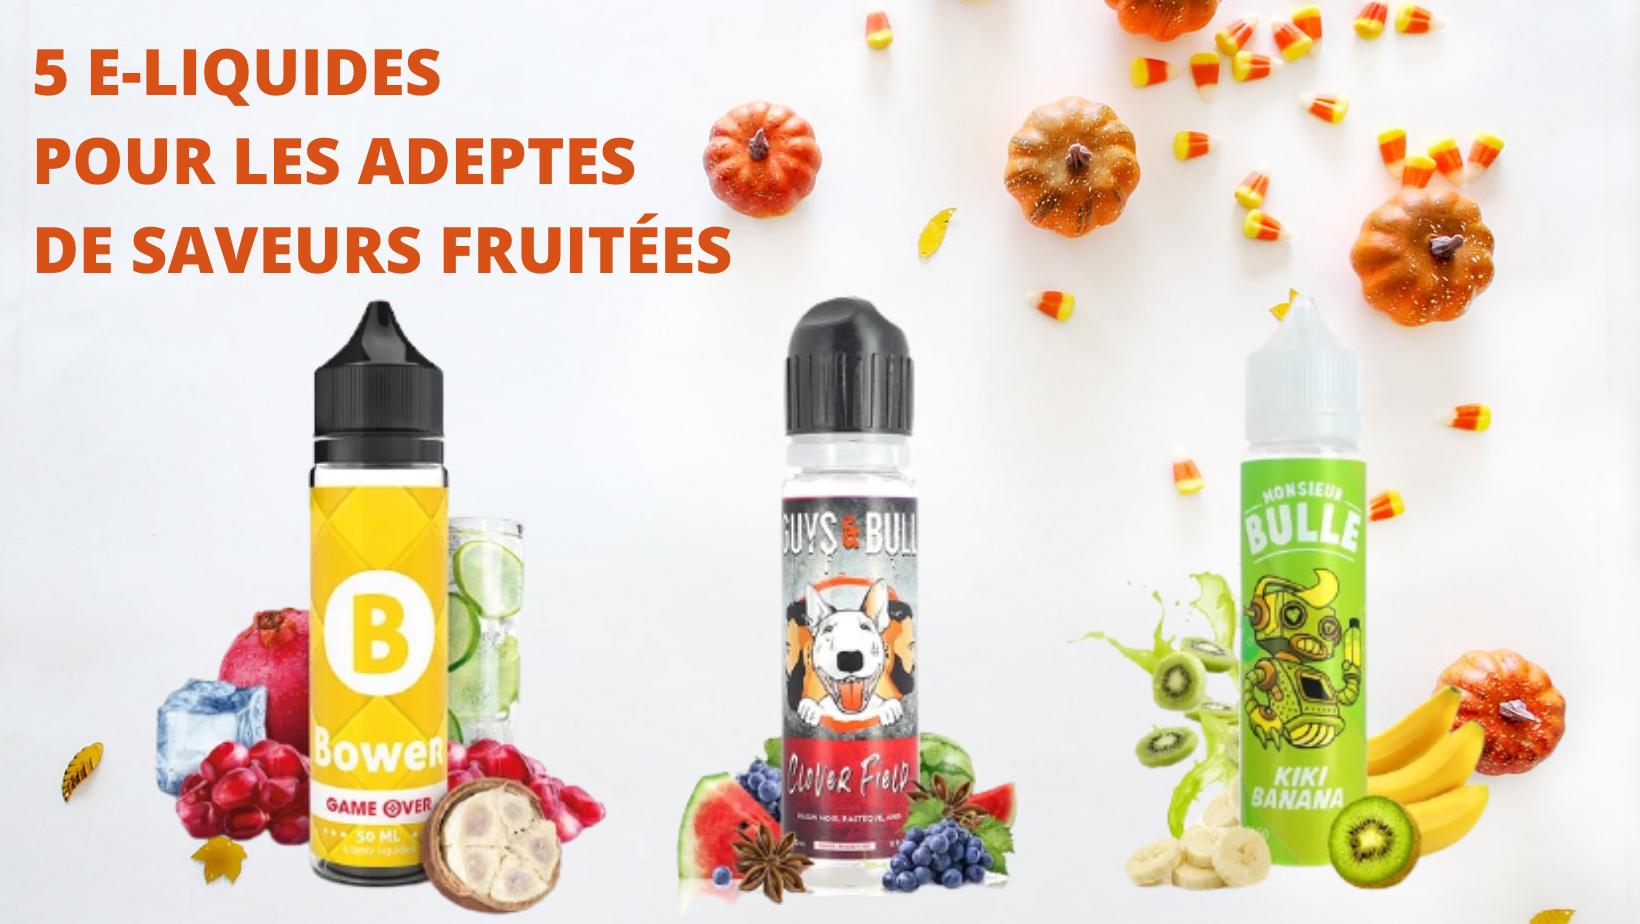 5 E-liquides pour les adeptes de saveurs fruitées